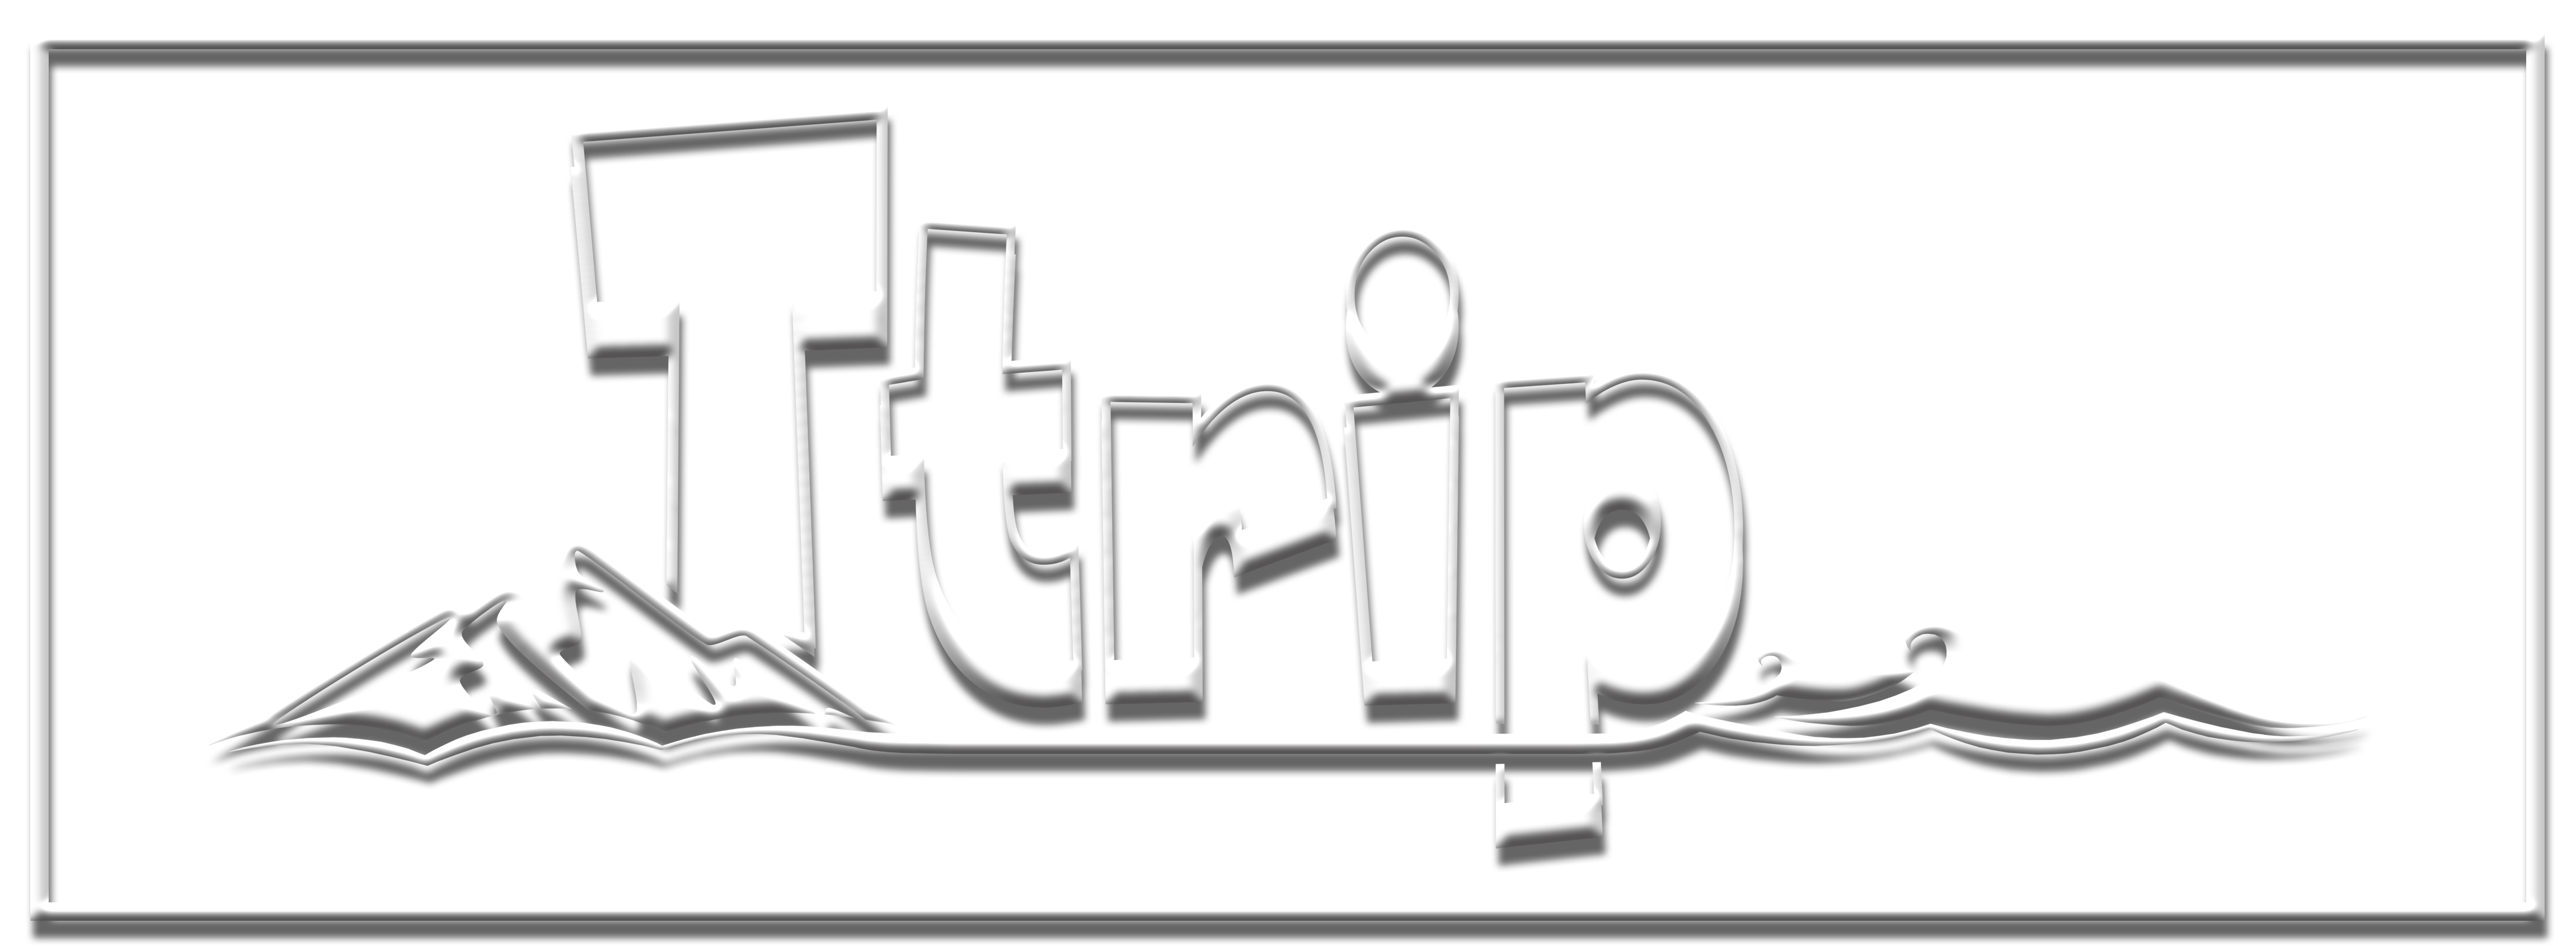 ttrip website